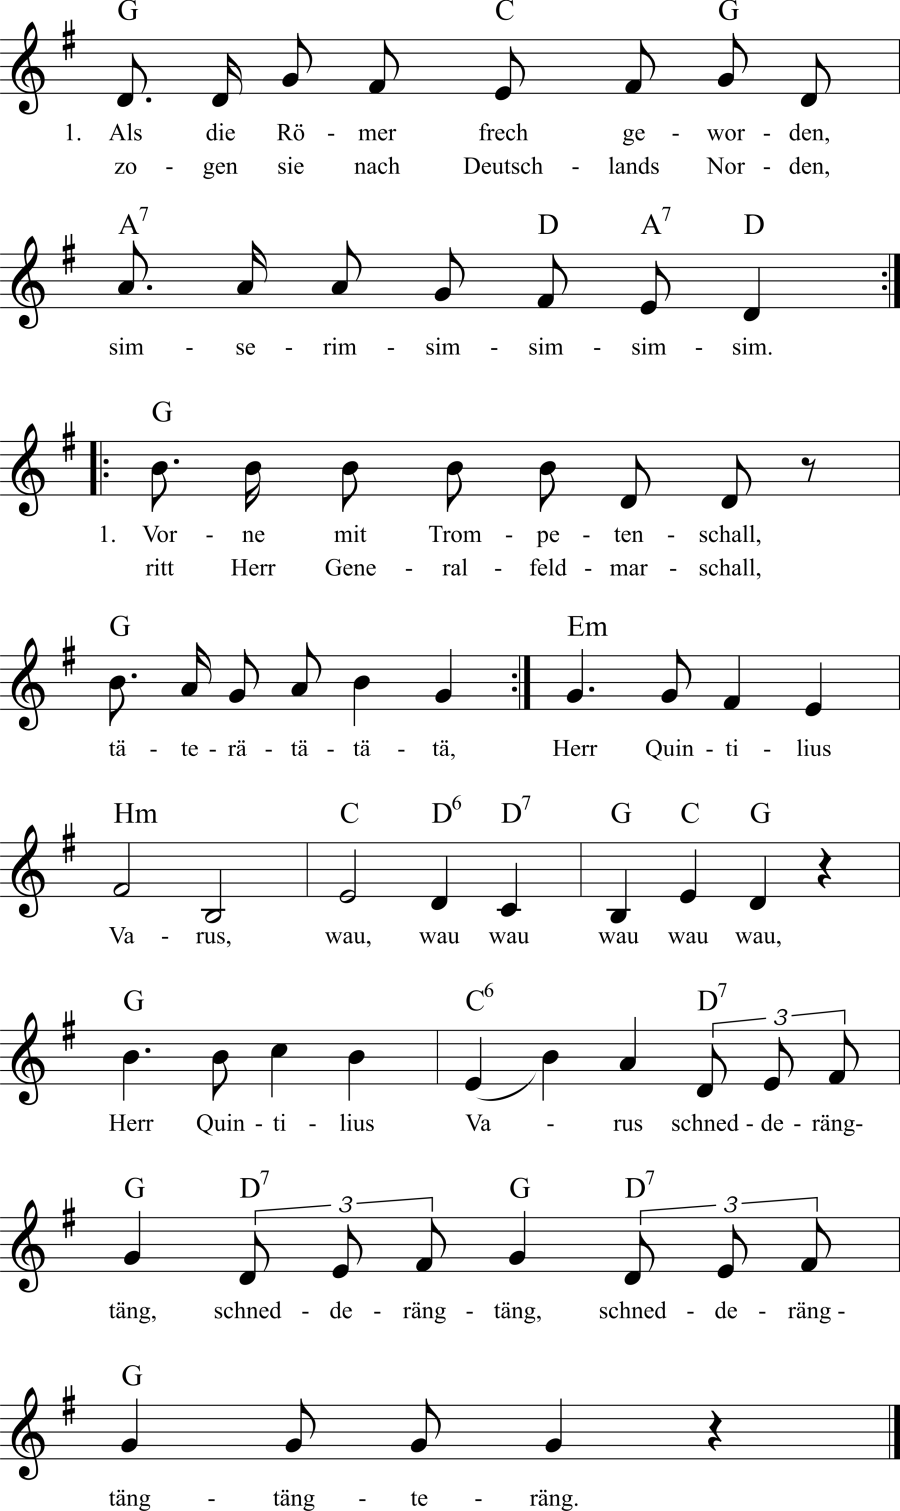 Musiknoten zum Lied - Als die Römer frech geworden